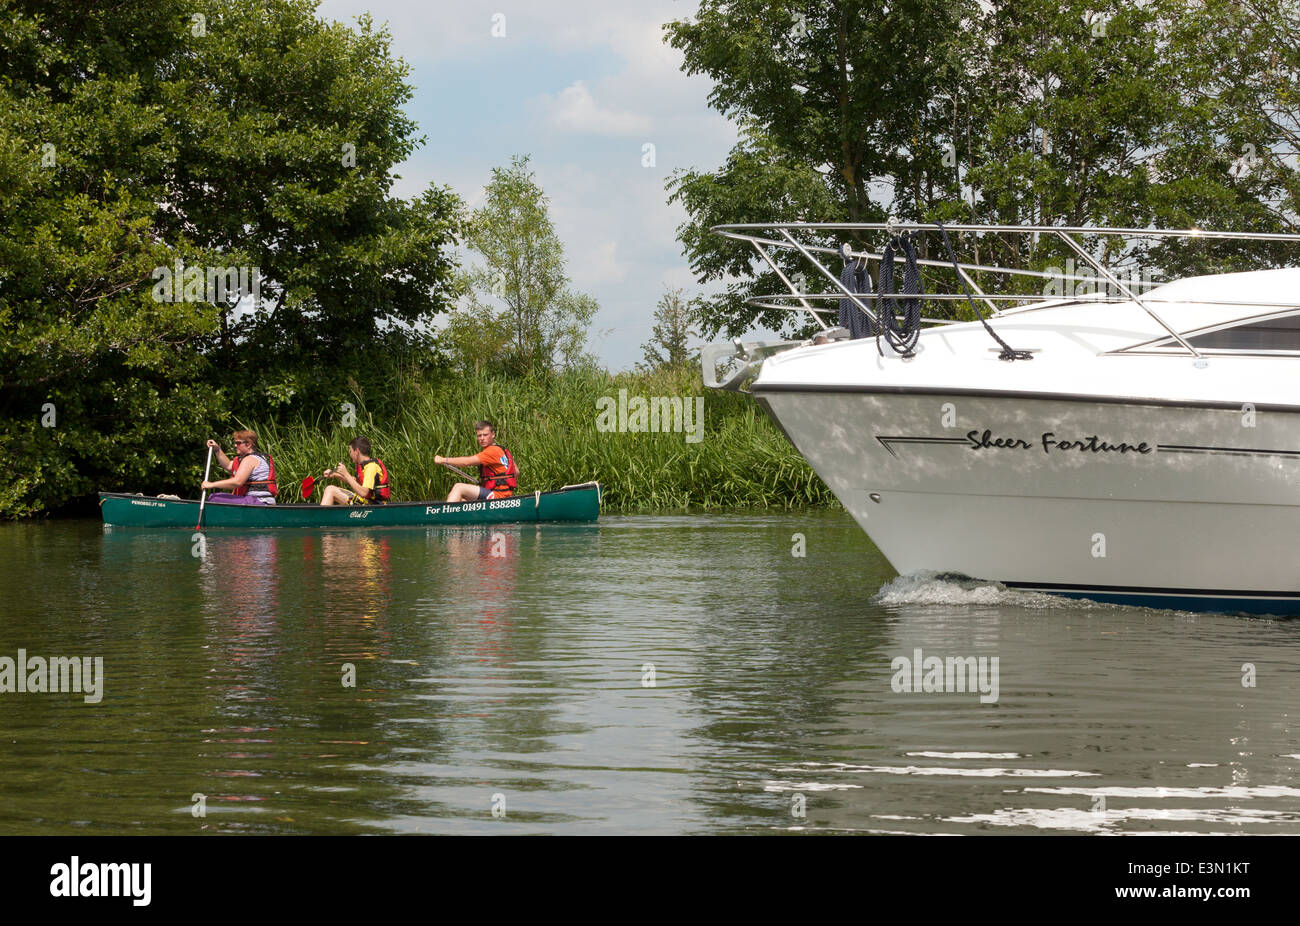 Una canoa rischia di essere superato da una barca a motore sul fiume Tamigi, Oxfordshire, Regno Unito Foto Stock